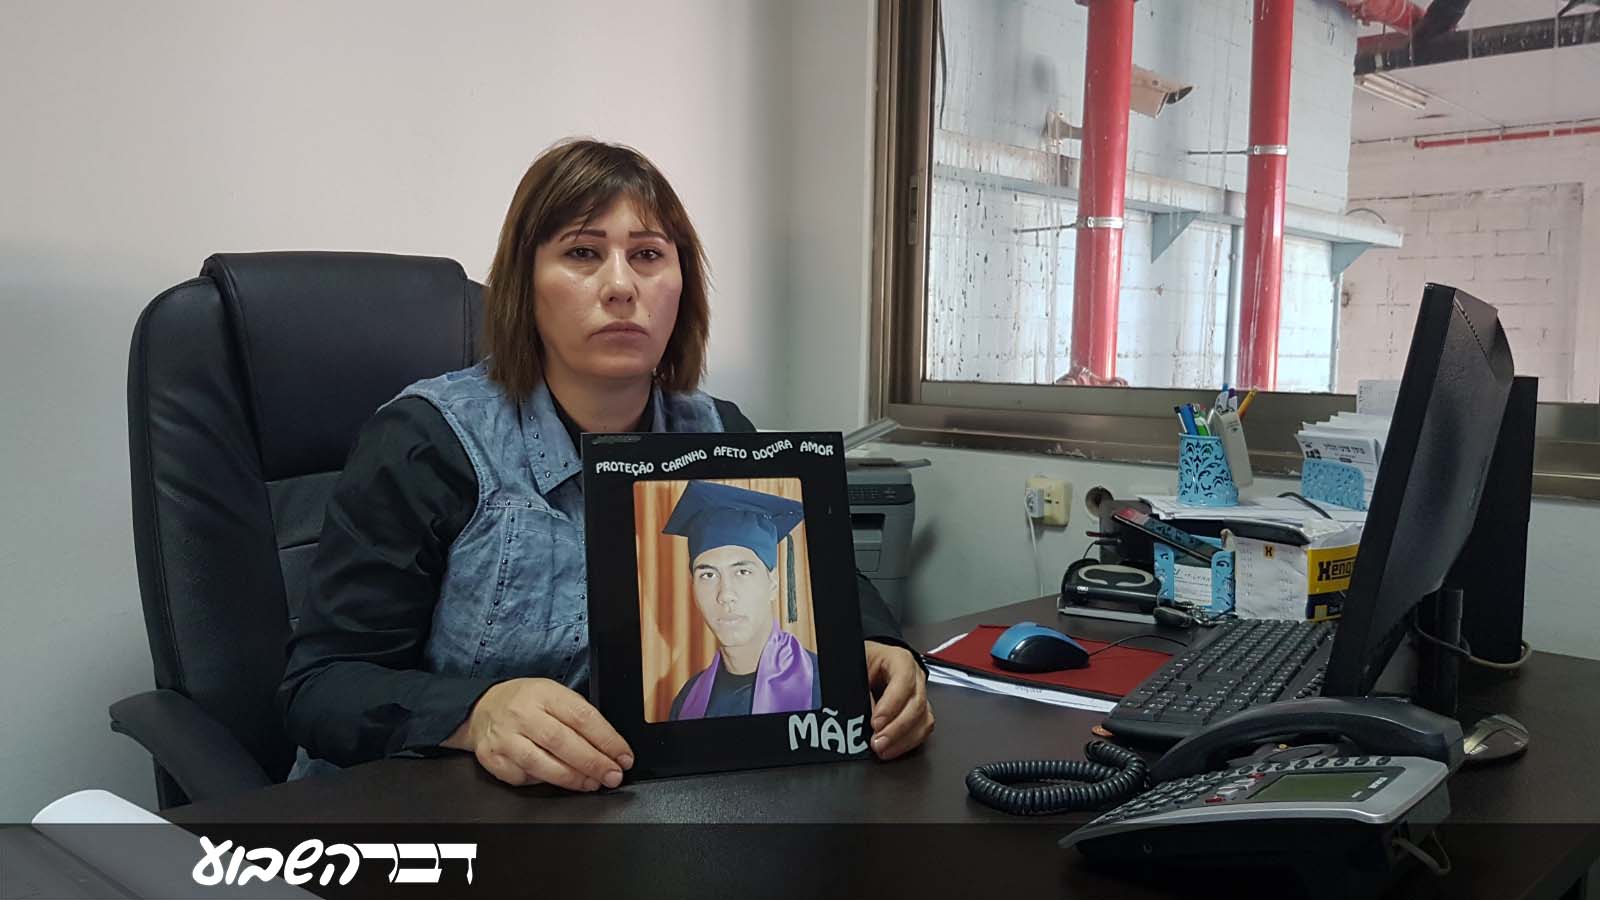 ליליאן ג'ואד זידאן, אמו של ג'ואד חליל שנהרג בתאונת בניין בנתניה ביולי 2015 (צילום: שי ניר)